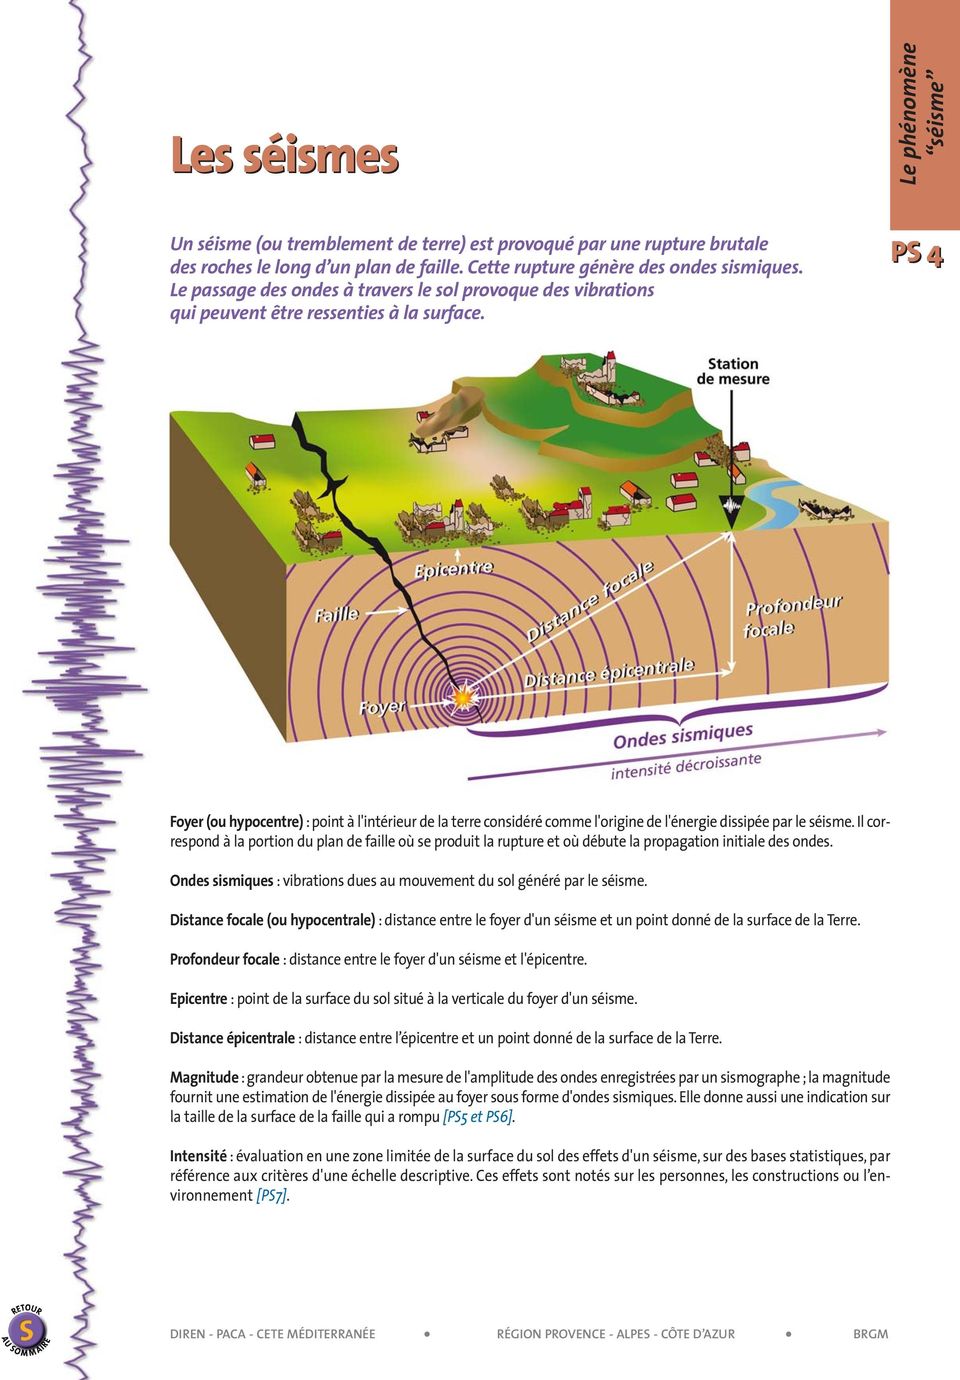 Le phénomène séisme PS 4 Foyer (ou hypocentre) : point à l'intérieur de la terre considéré comme l'origine de l'énergie dissipée par le séisme.